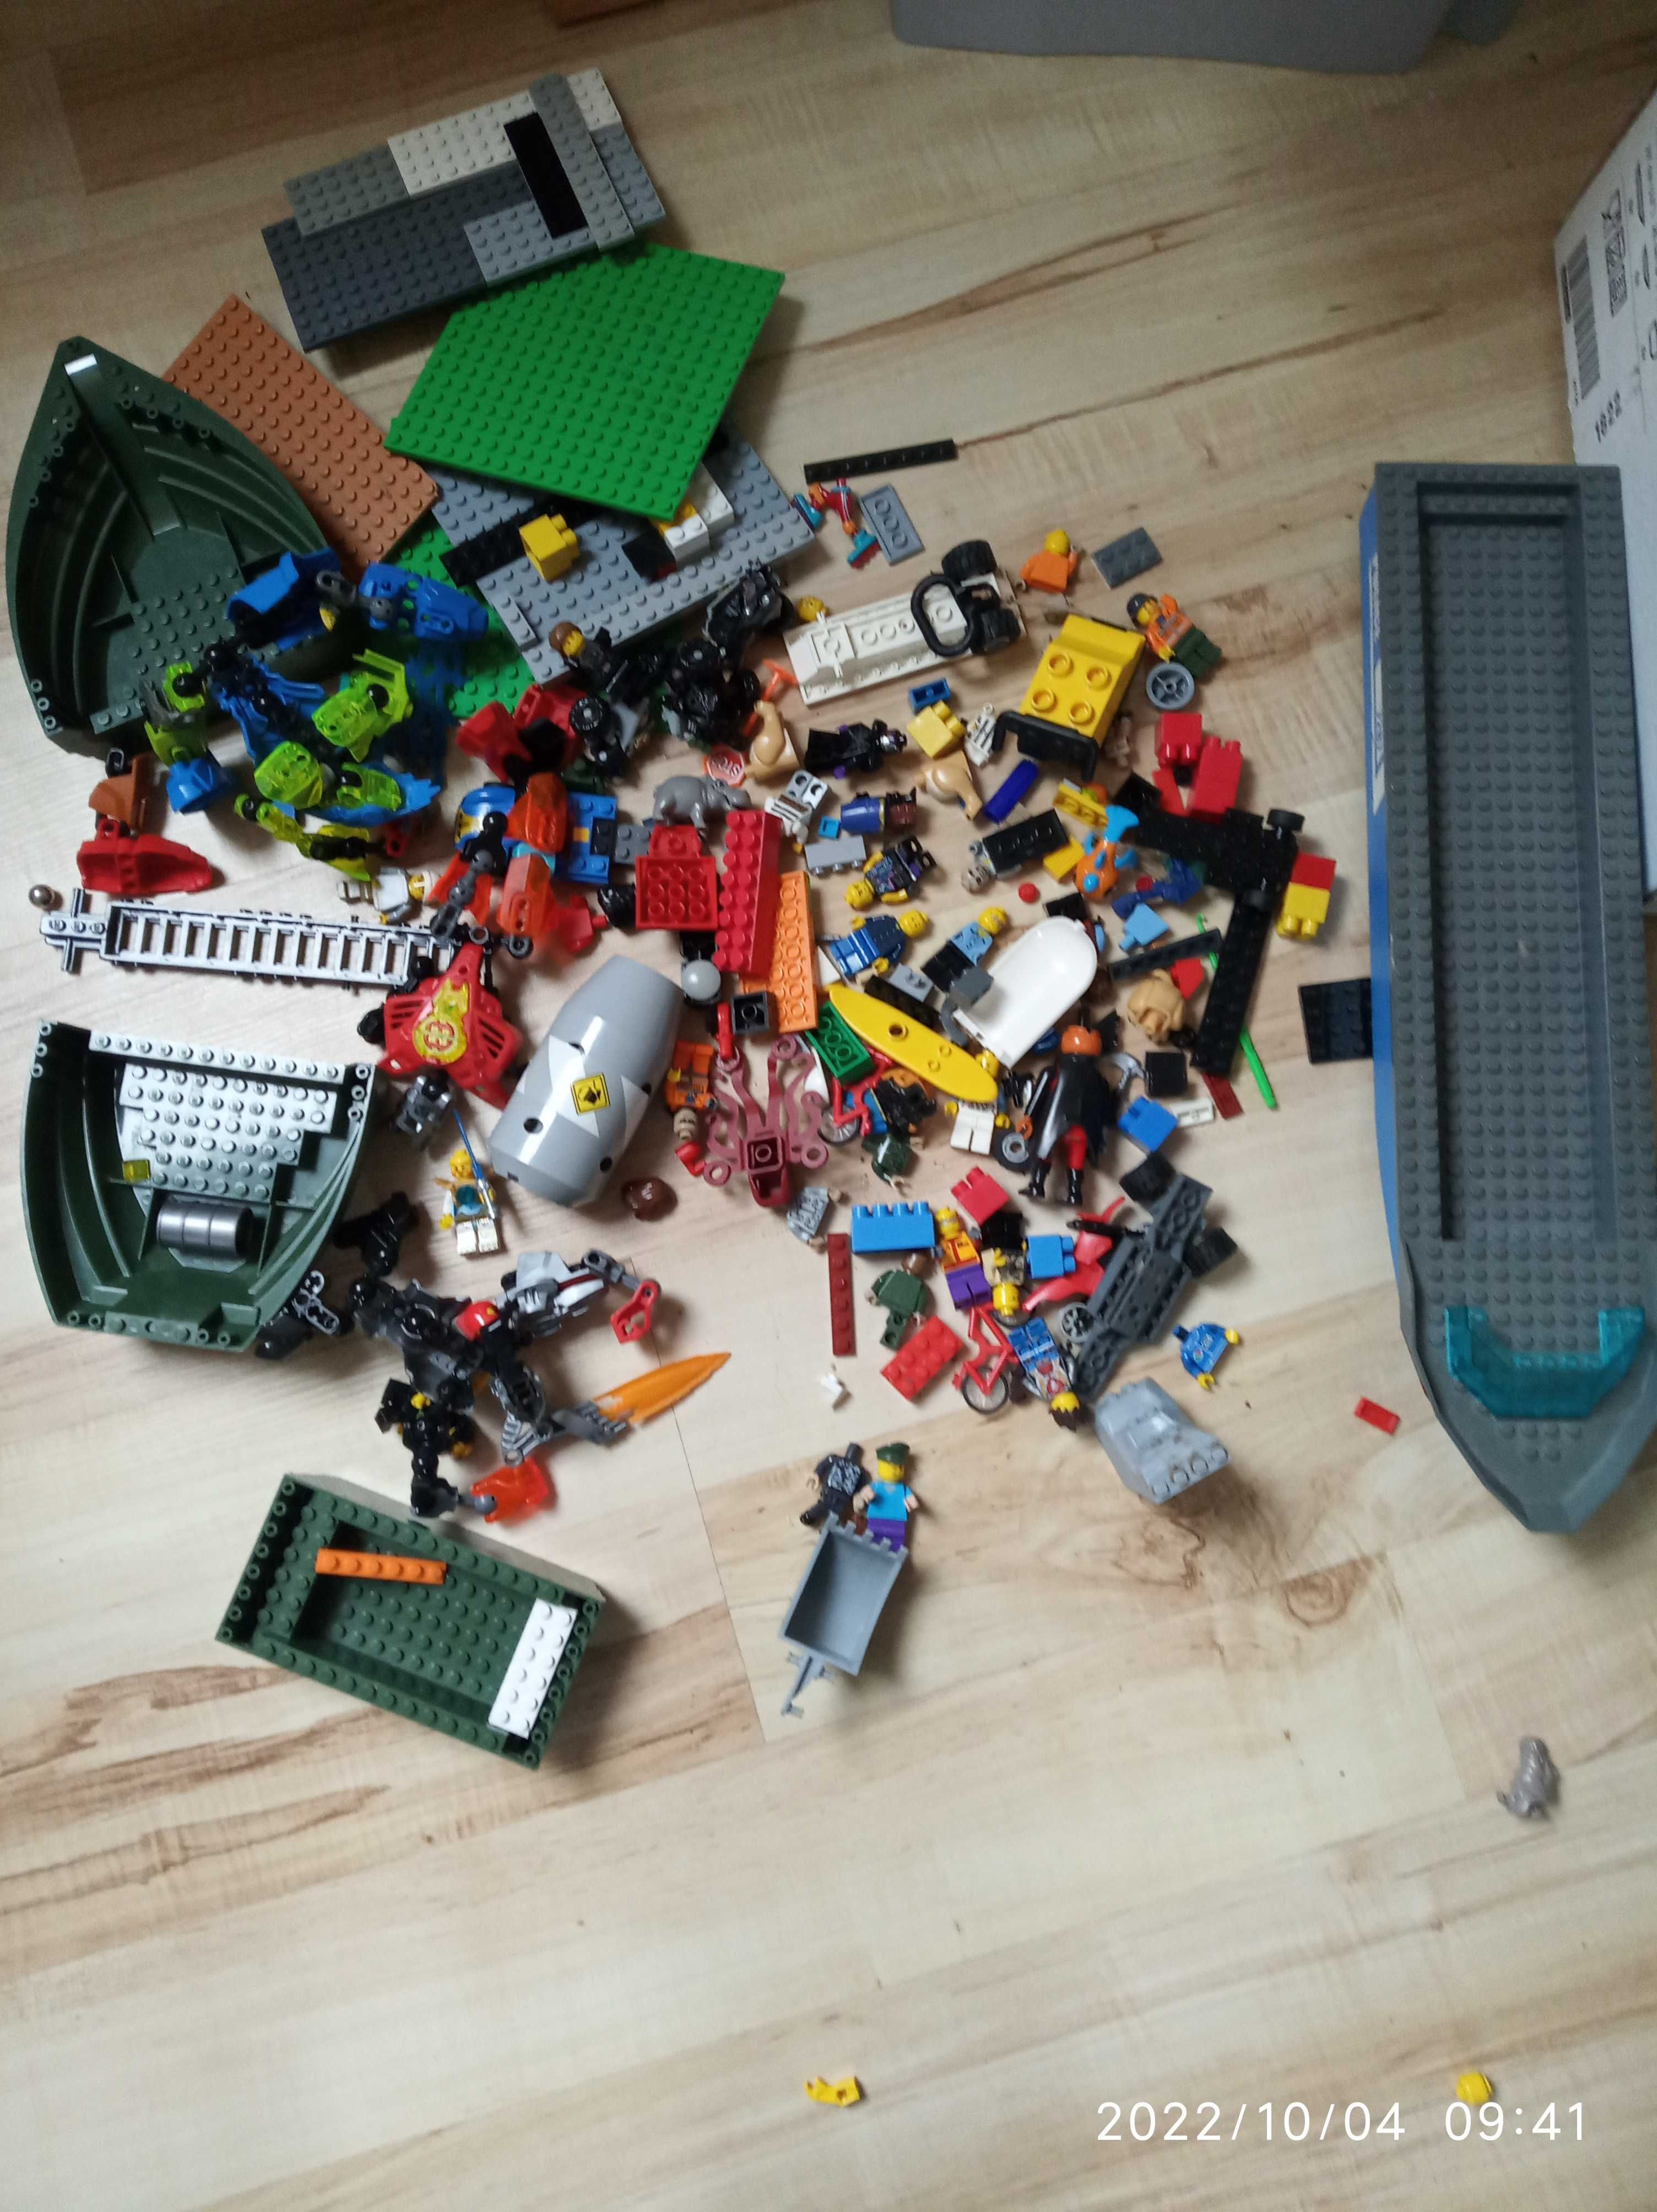 Klocki LEGO duża paka 12 kg gratis "Tomek I przyjaciele" żuraw